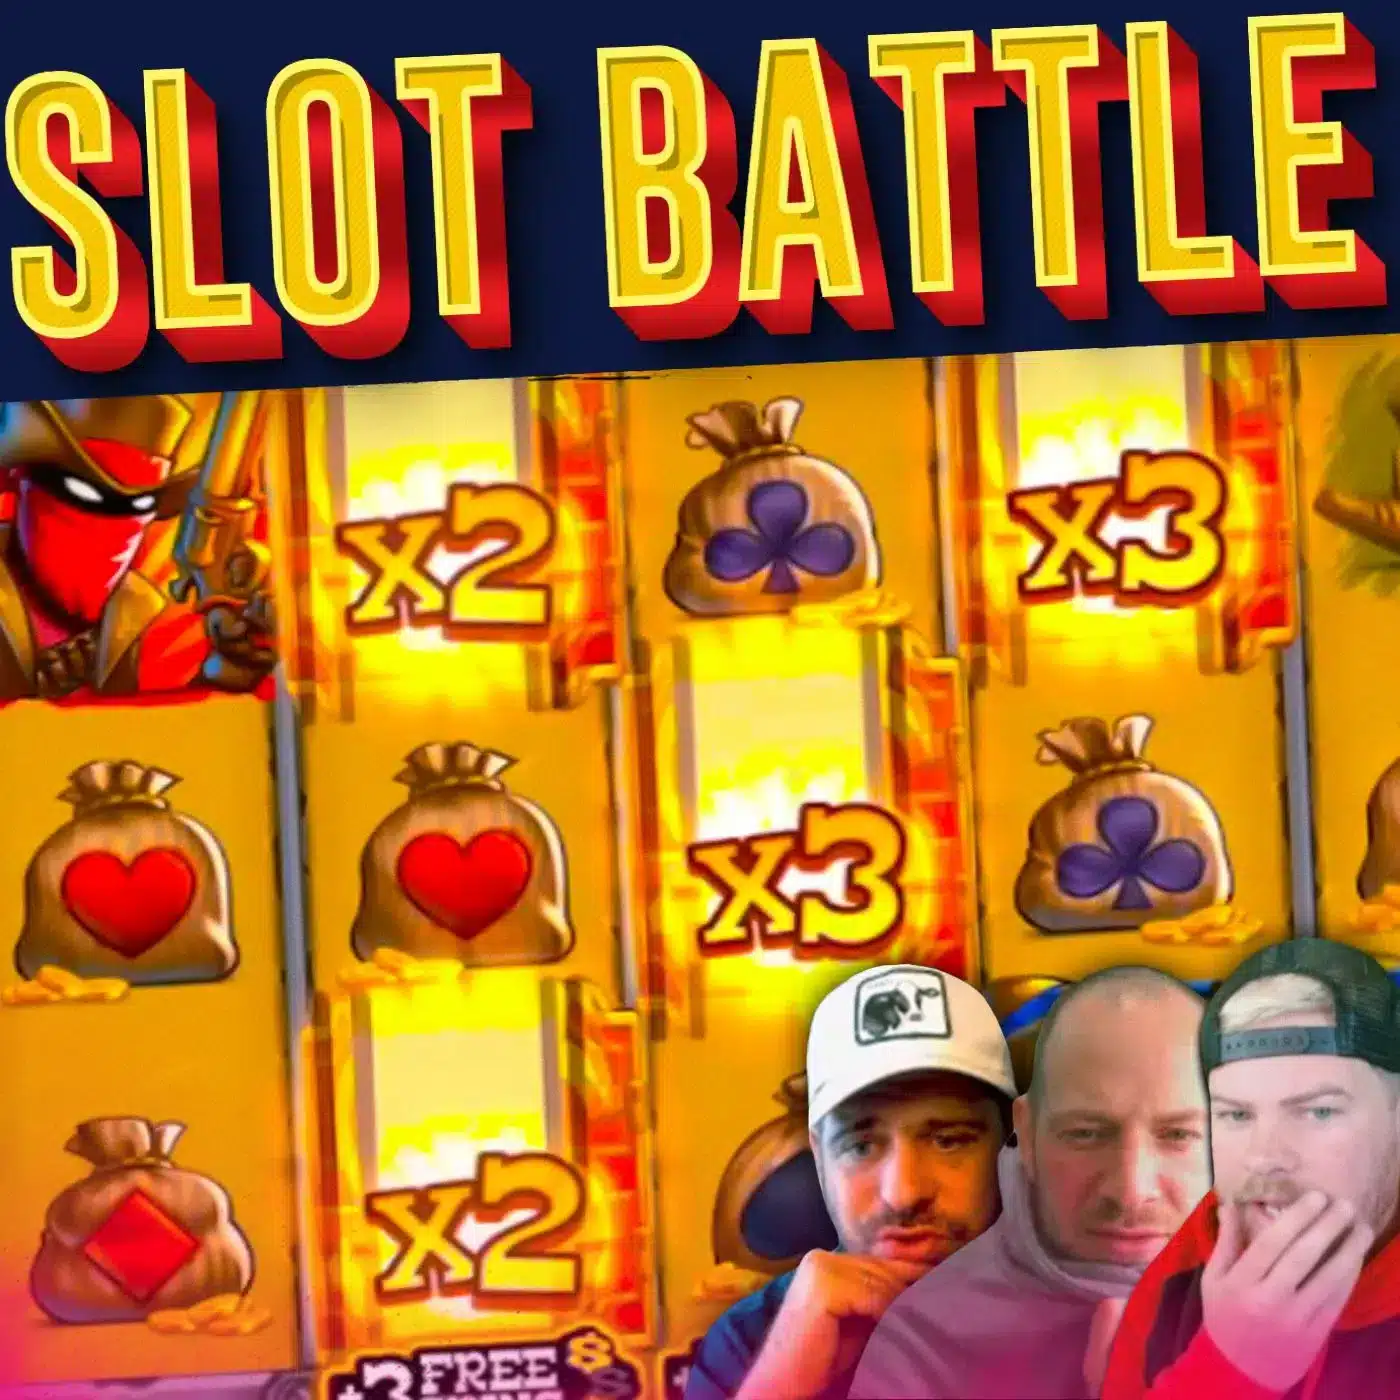 Slot Battle Sunday with FruitySlots